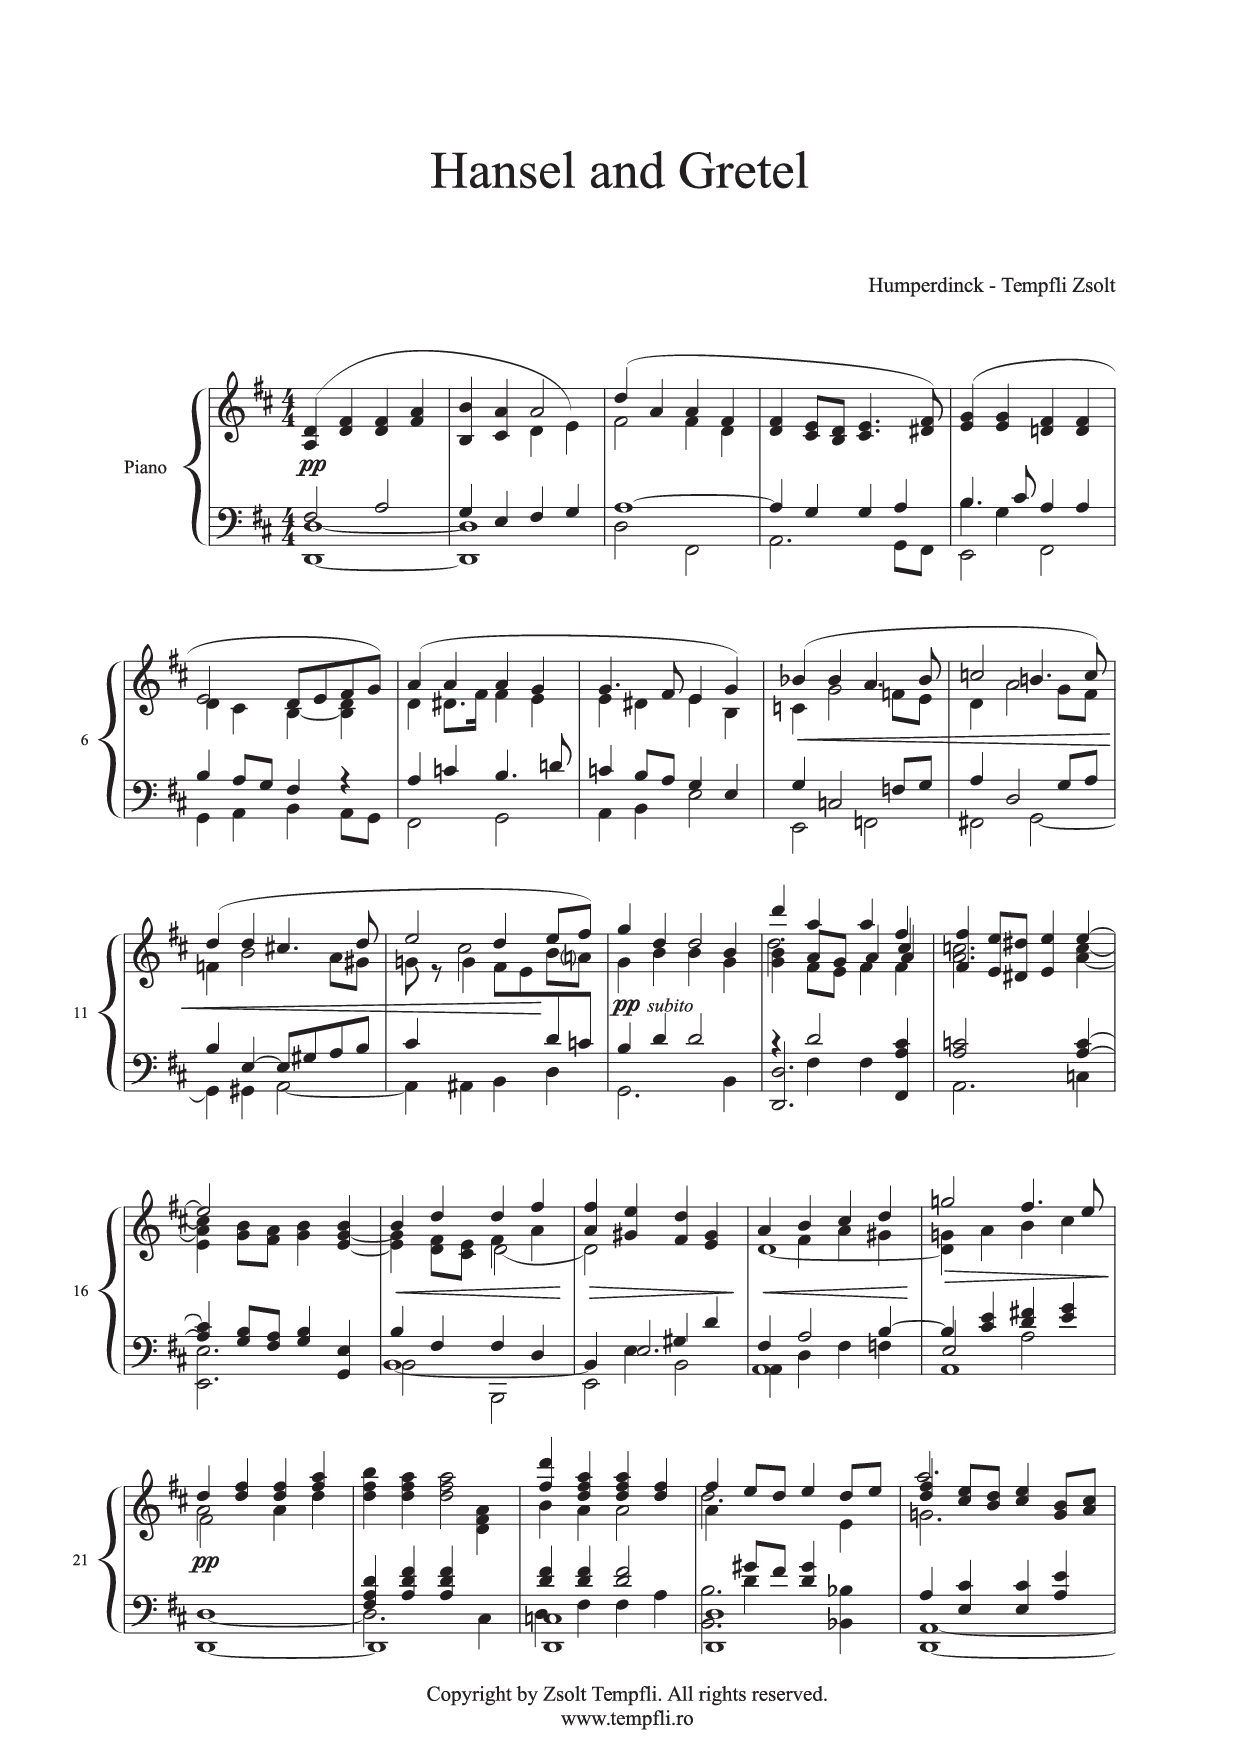 Engelbert Humperdinck - Zsolt Tempfli: Hänsel şi Gretel  - Scenă de vis şi pantomimă - transcripţie pe pian (op. 28)